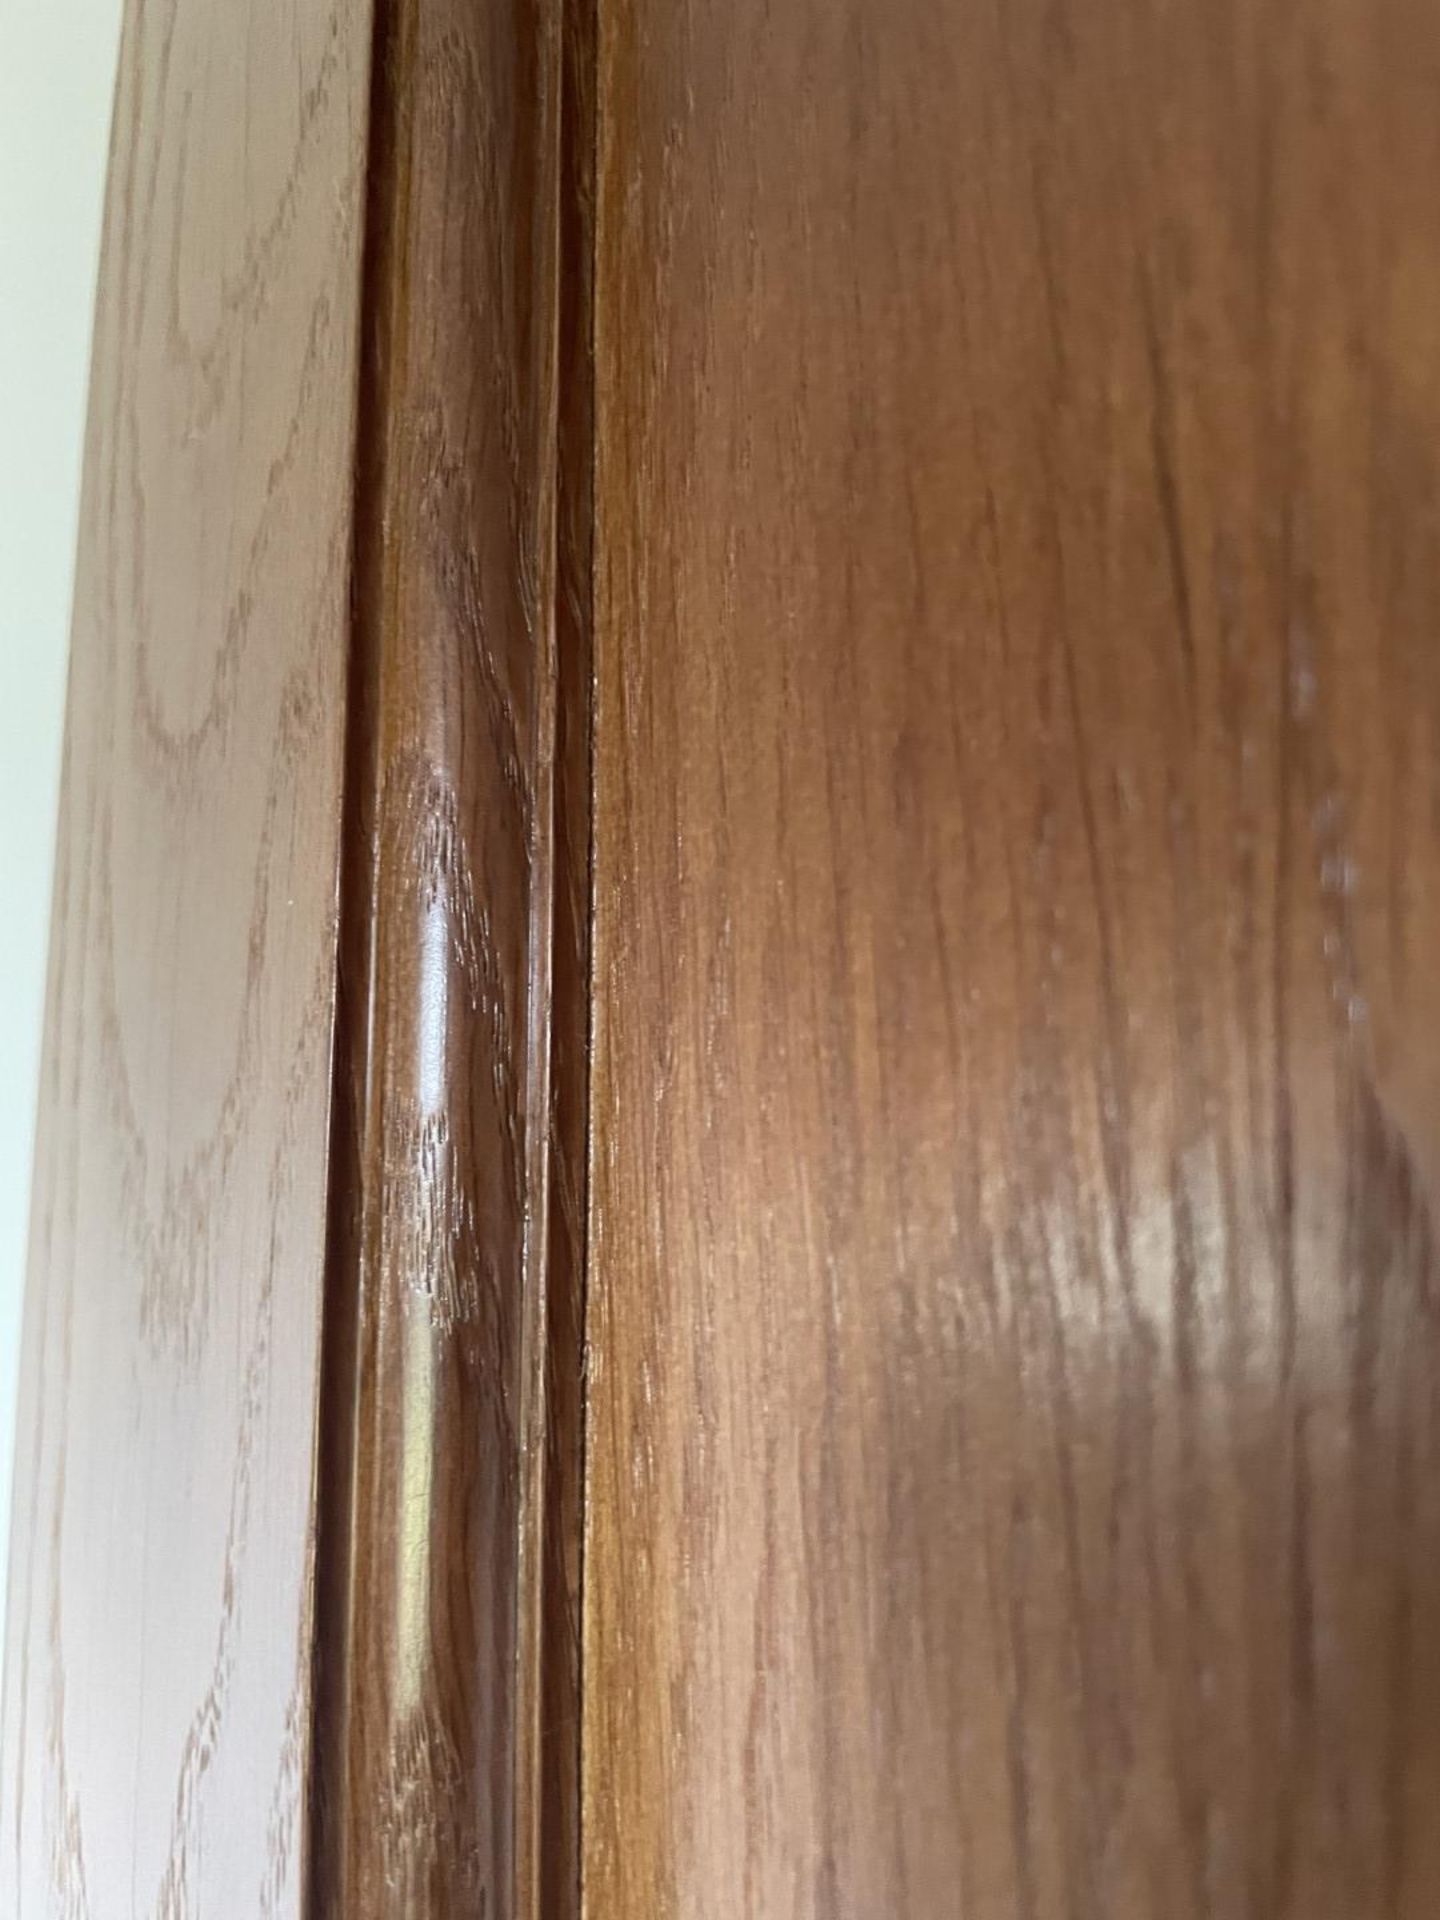 1 x Solid Oak Wooden Lockable Internal Door - Ref: PAN201 / INHLWY - CL896 - NO VAT - Image 9 of 10